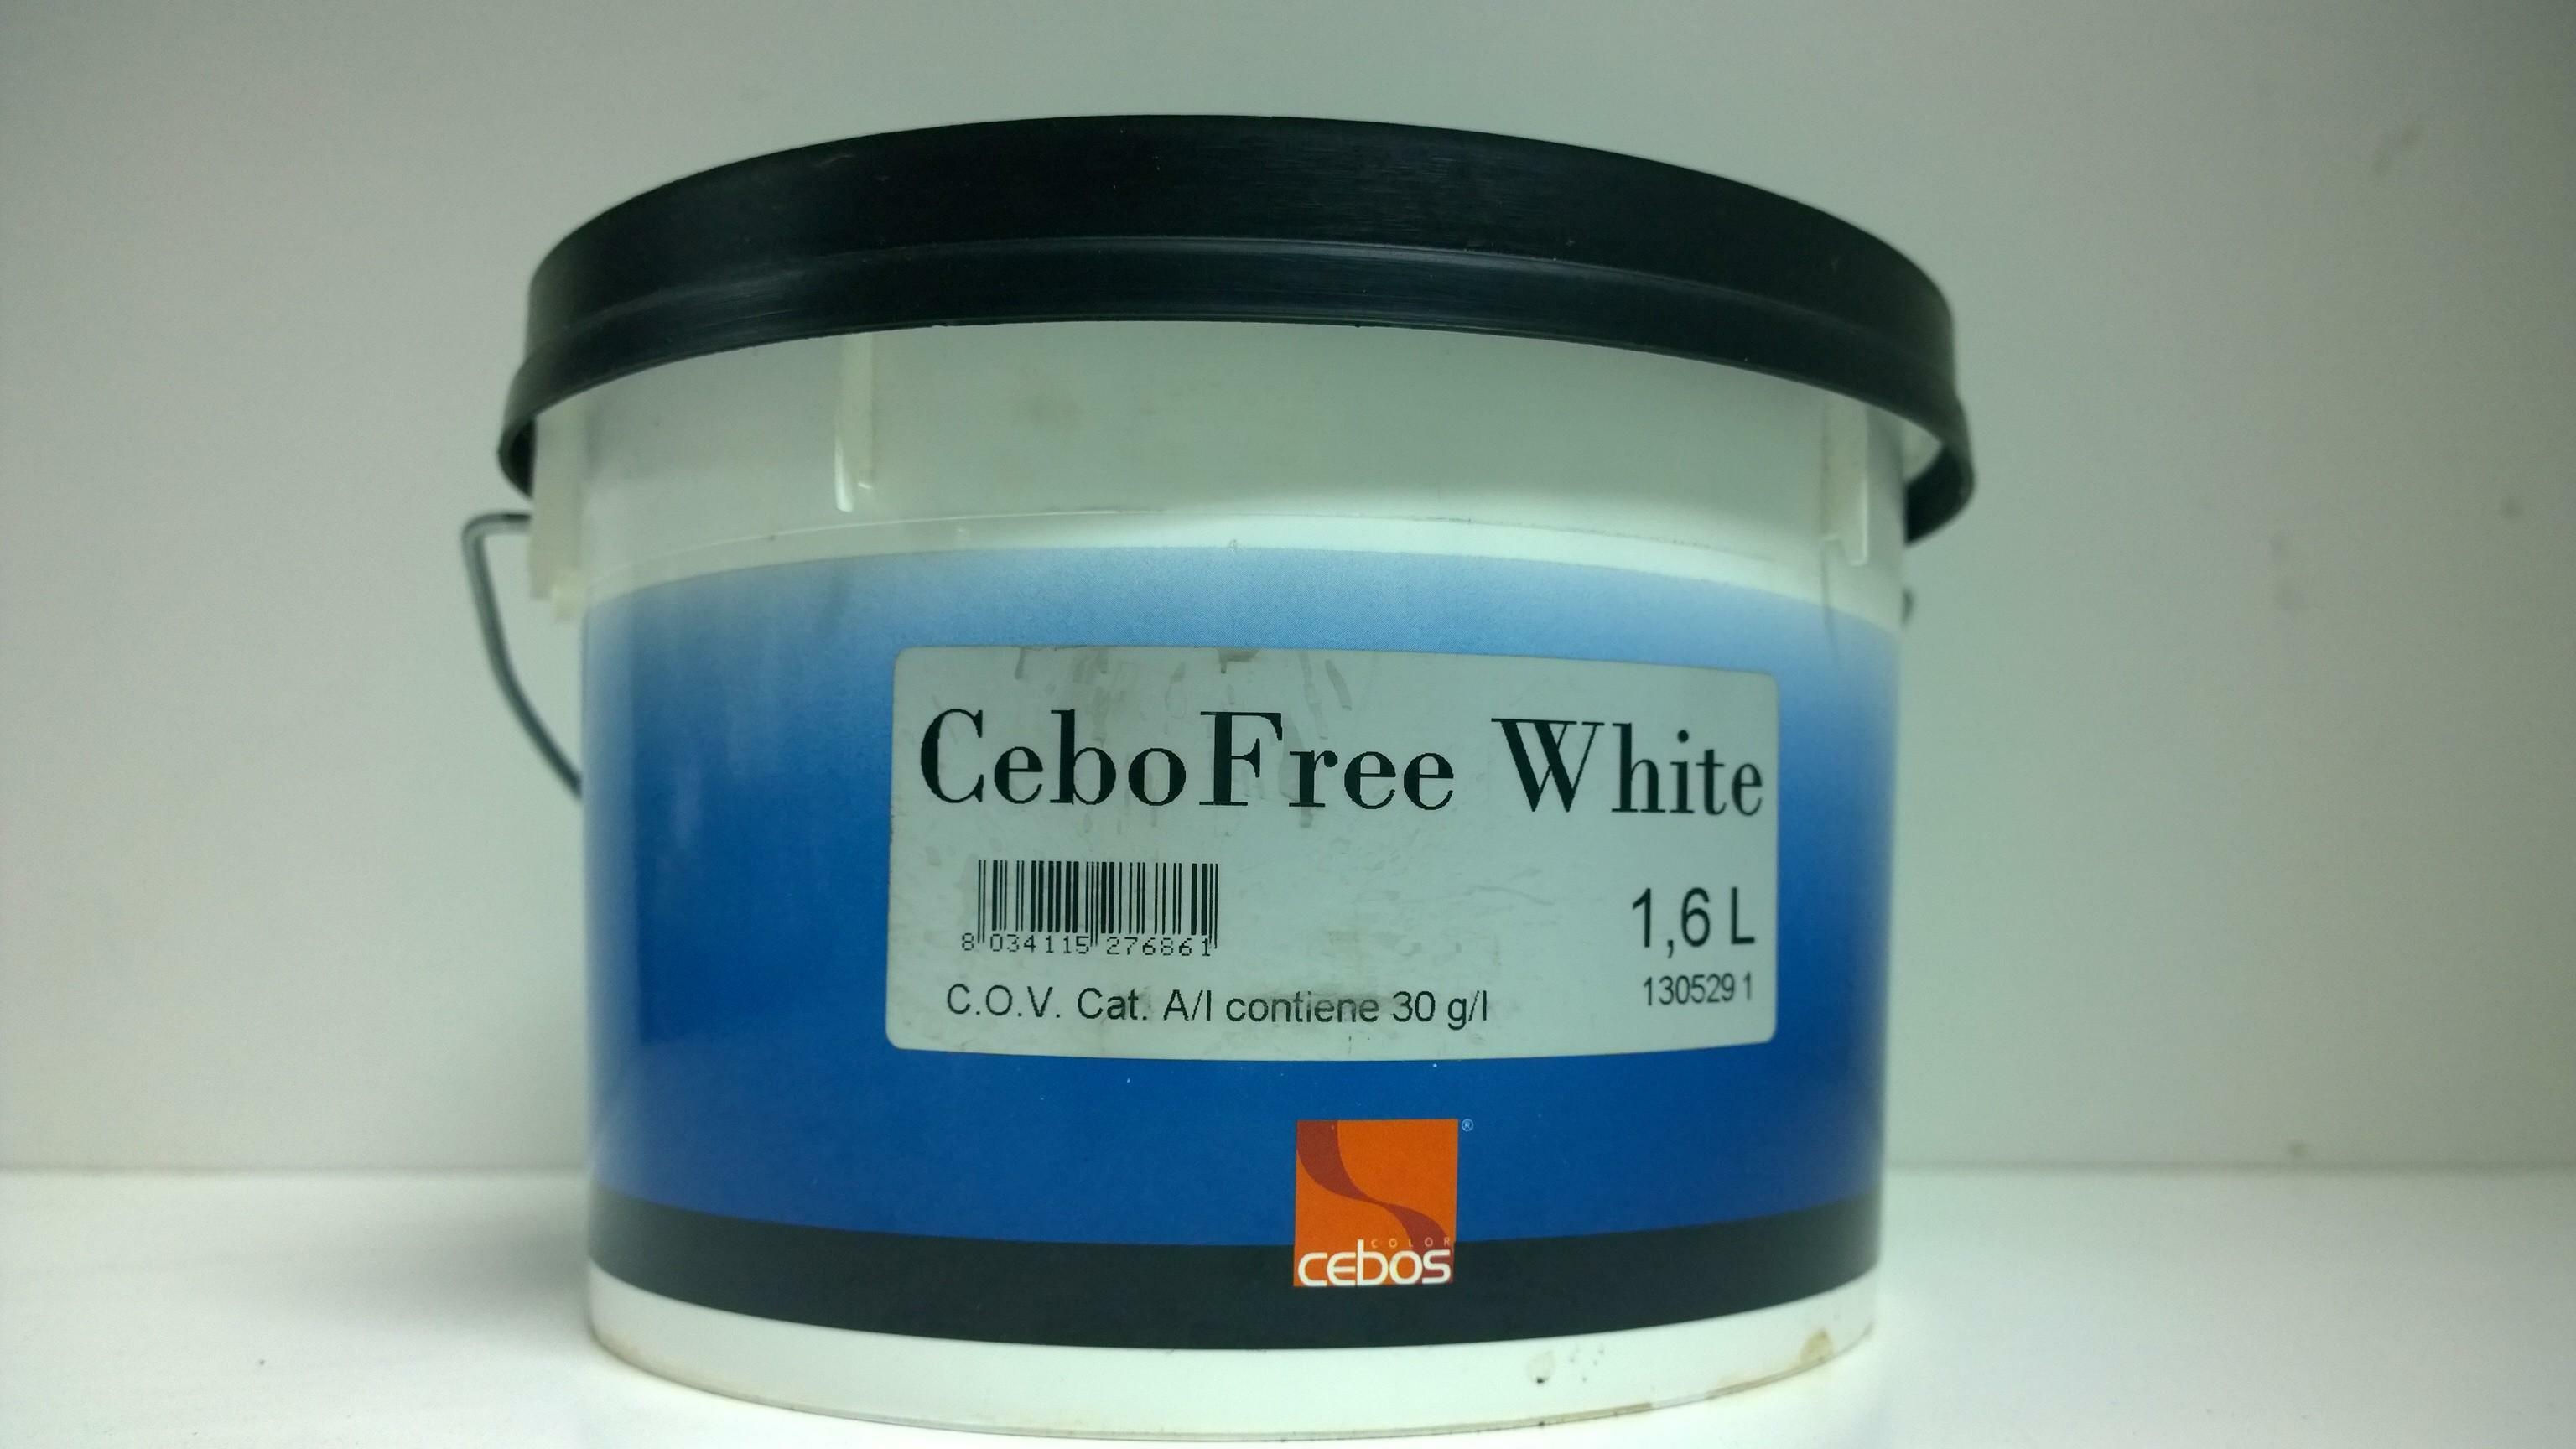 cebos cebos cebofree white 1,6 lt finitura multicromatica allacqua per interni